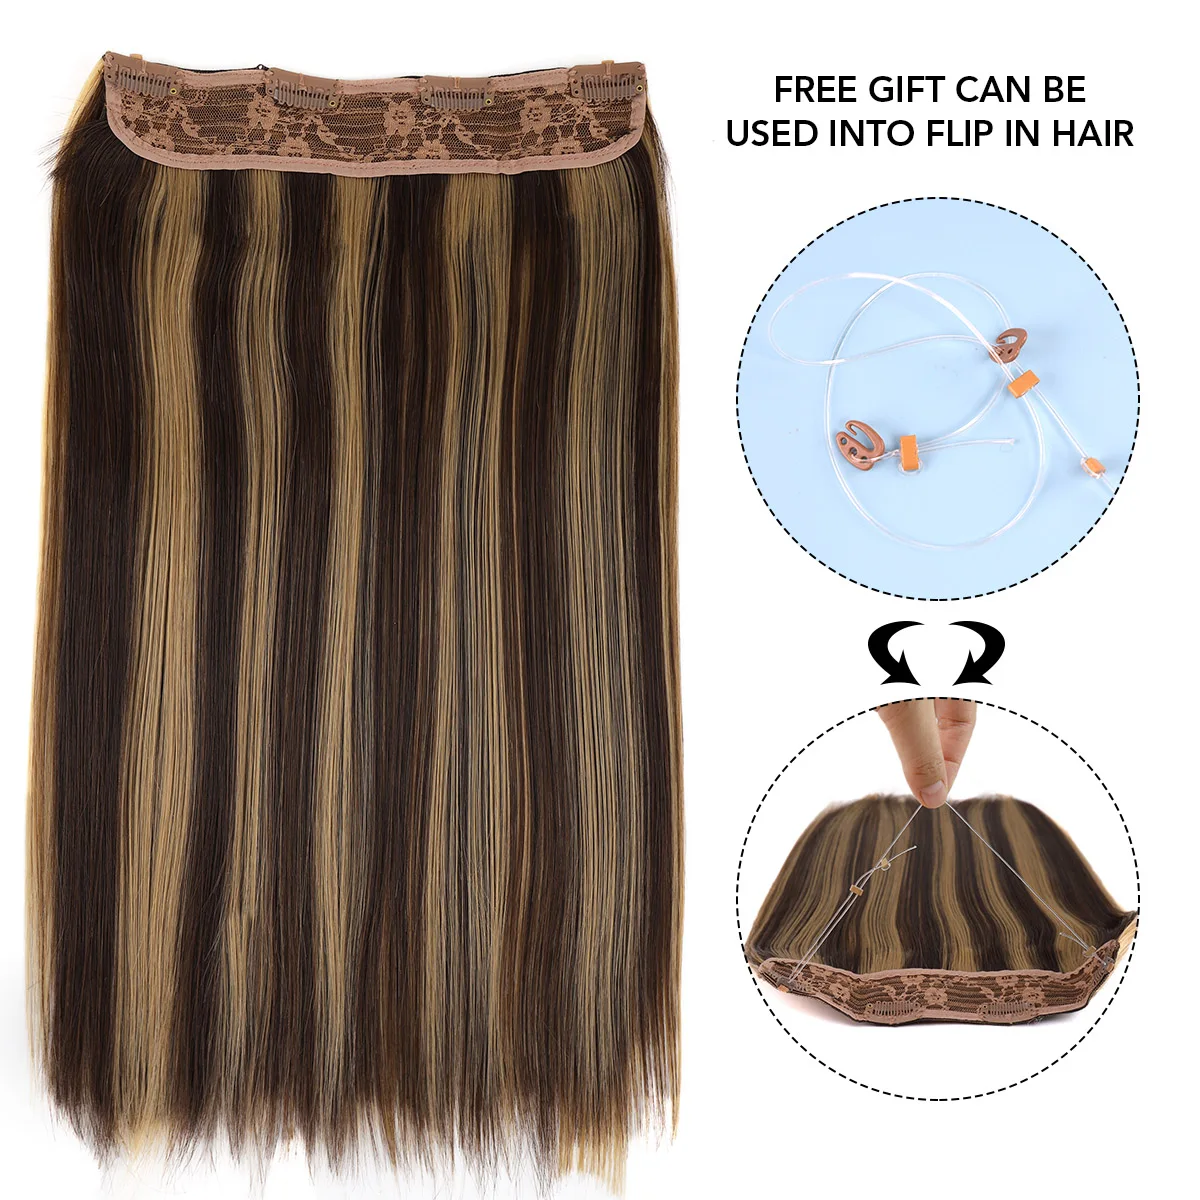 Настоящая Красота Невидимая Проволока С Зажимами Для Наращивания Волос Secret Fish Line Шиньоны Для Наращивания Человеческих Волос 100% Бразильского Производства